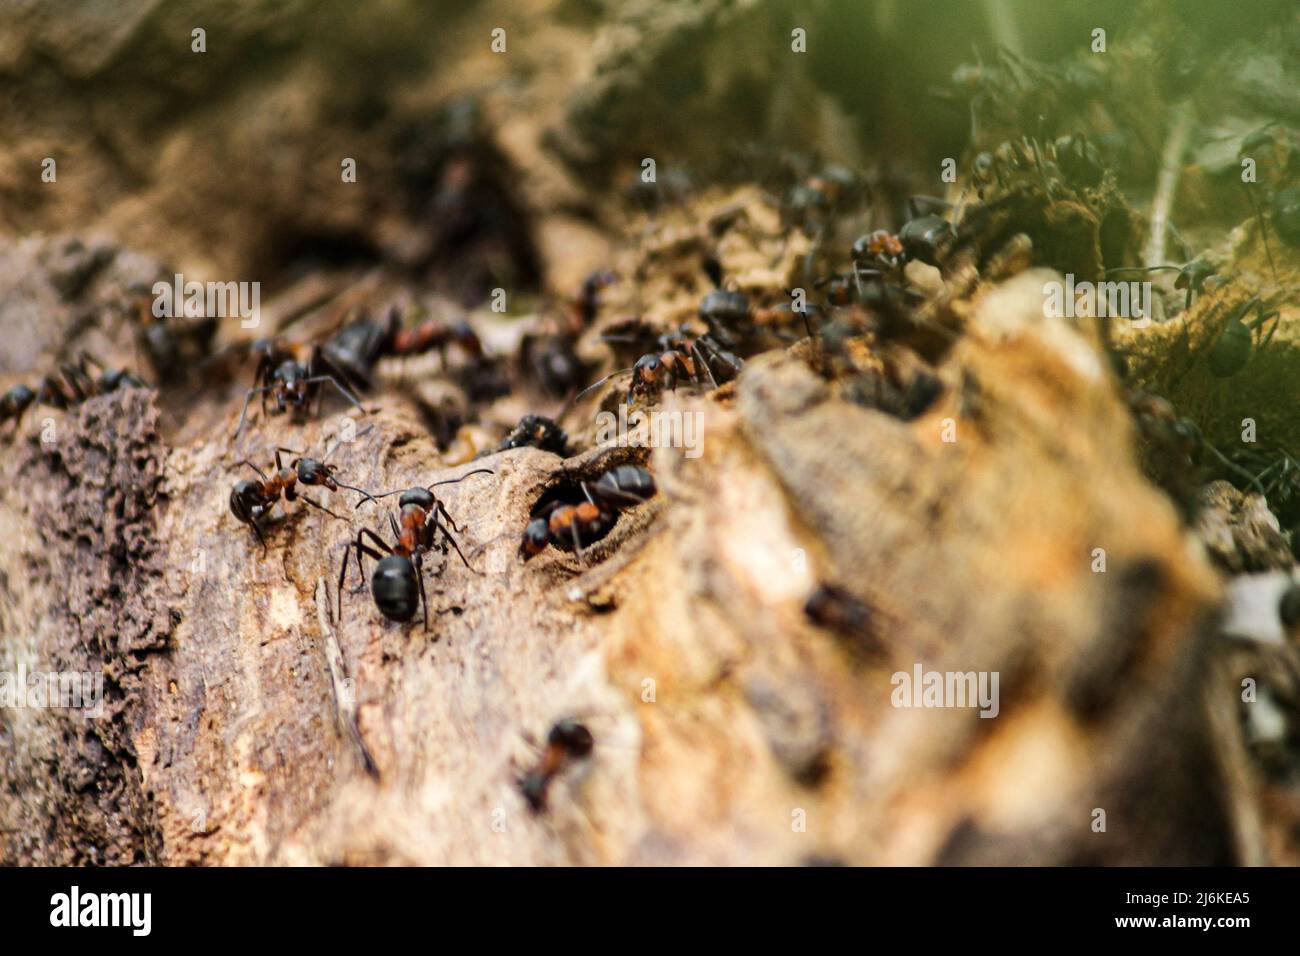 Les fourmis des travailleurs du bois du sud sont les plus gros fourmis du Royaume-Uni, atteignant jusqu'à 10mm de long. Collecte de matériel pour la construction de leur nid Banque D'Images